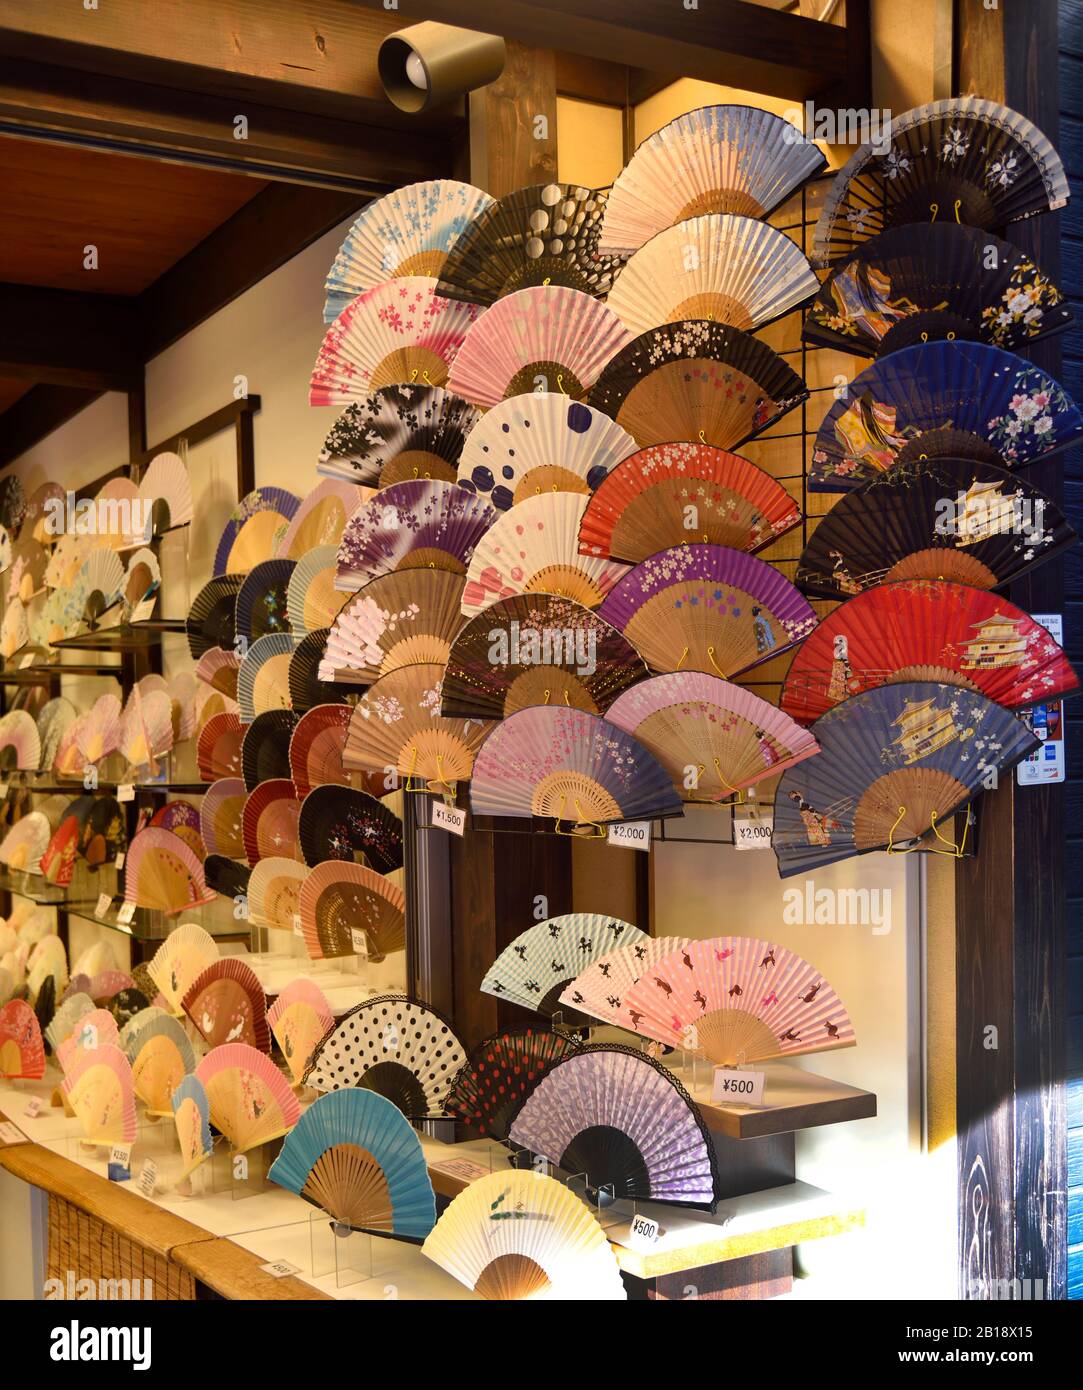 Fans souvenirs Kyoto Japan Stock Photo